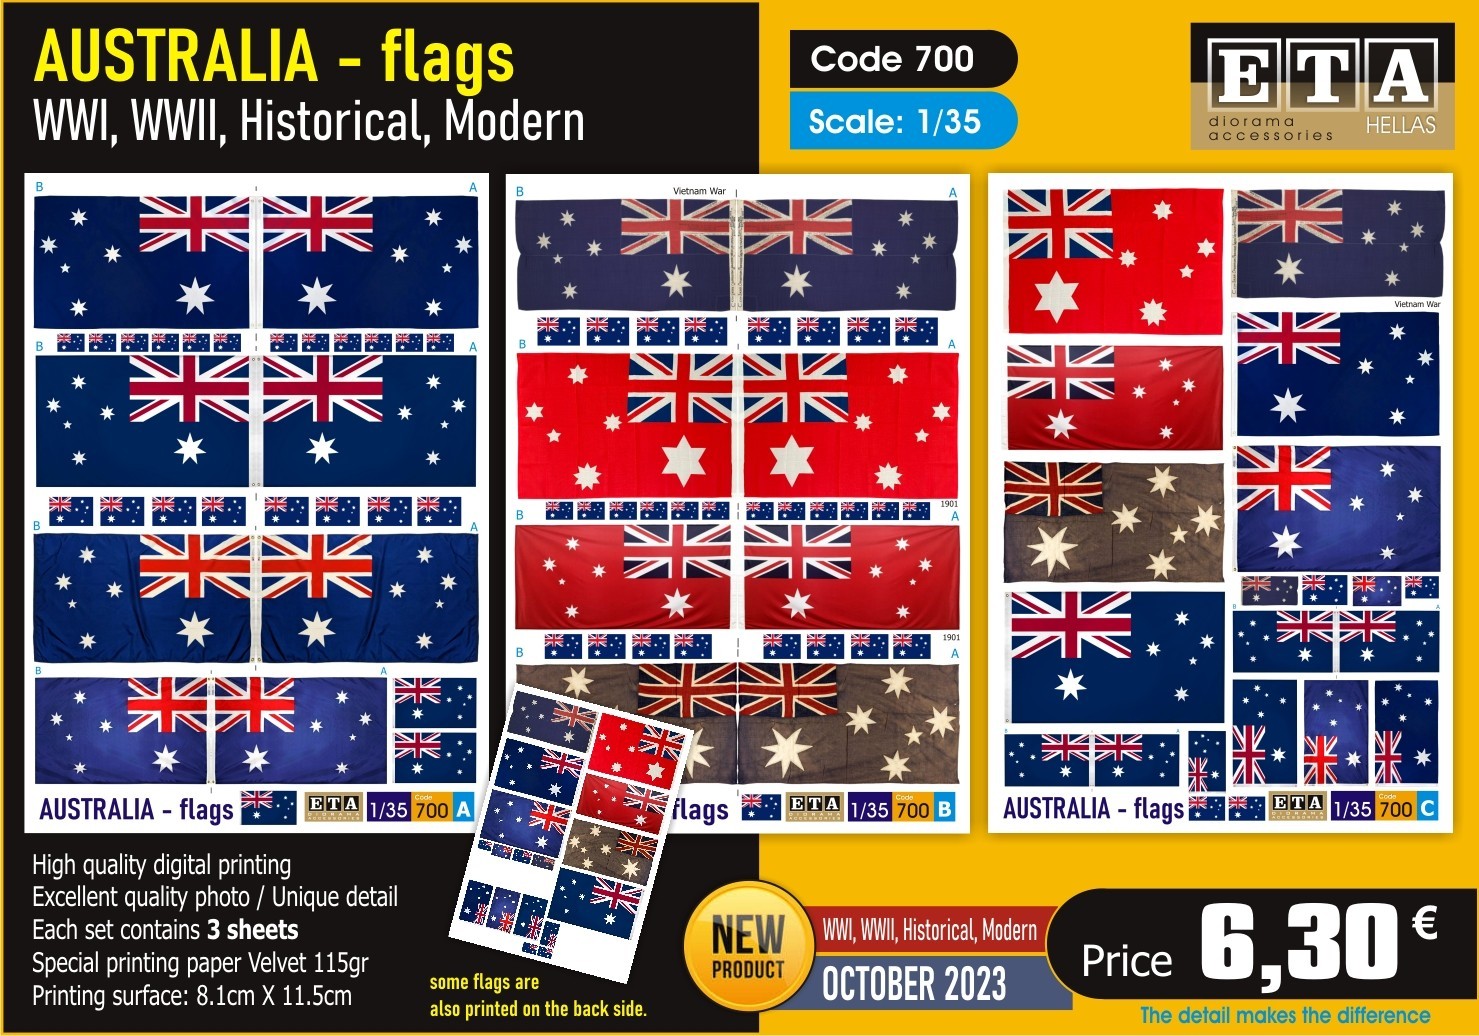 ETA Diorama Announces October Australia Flags 1/35